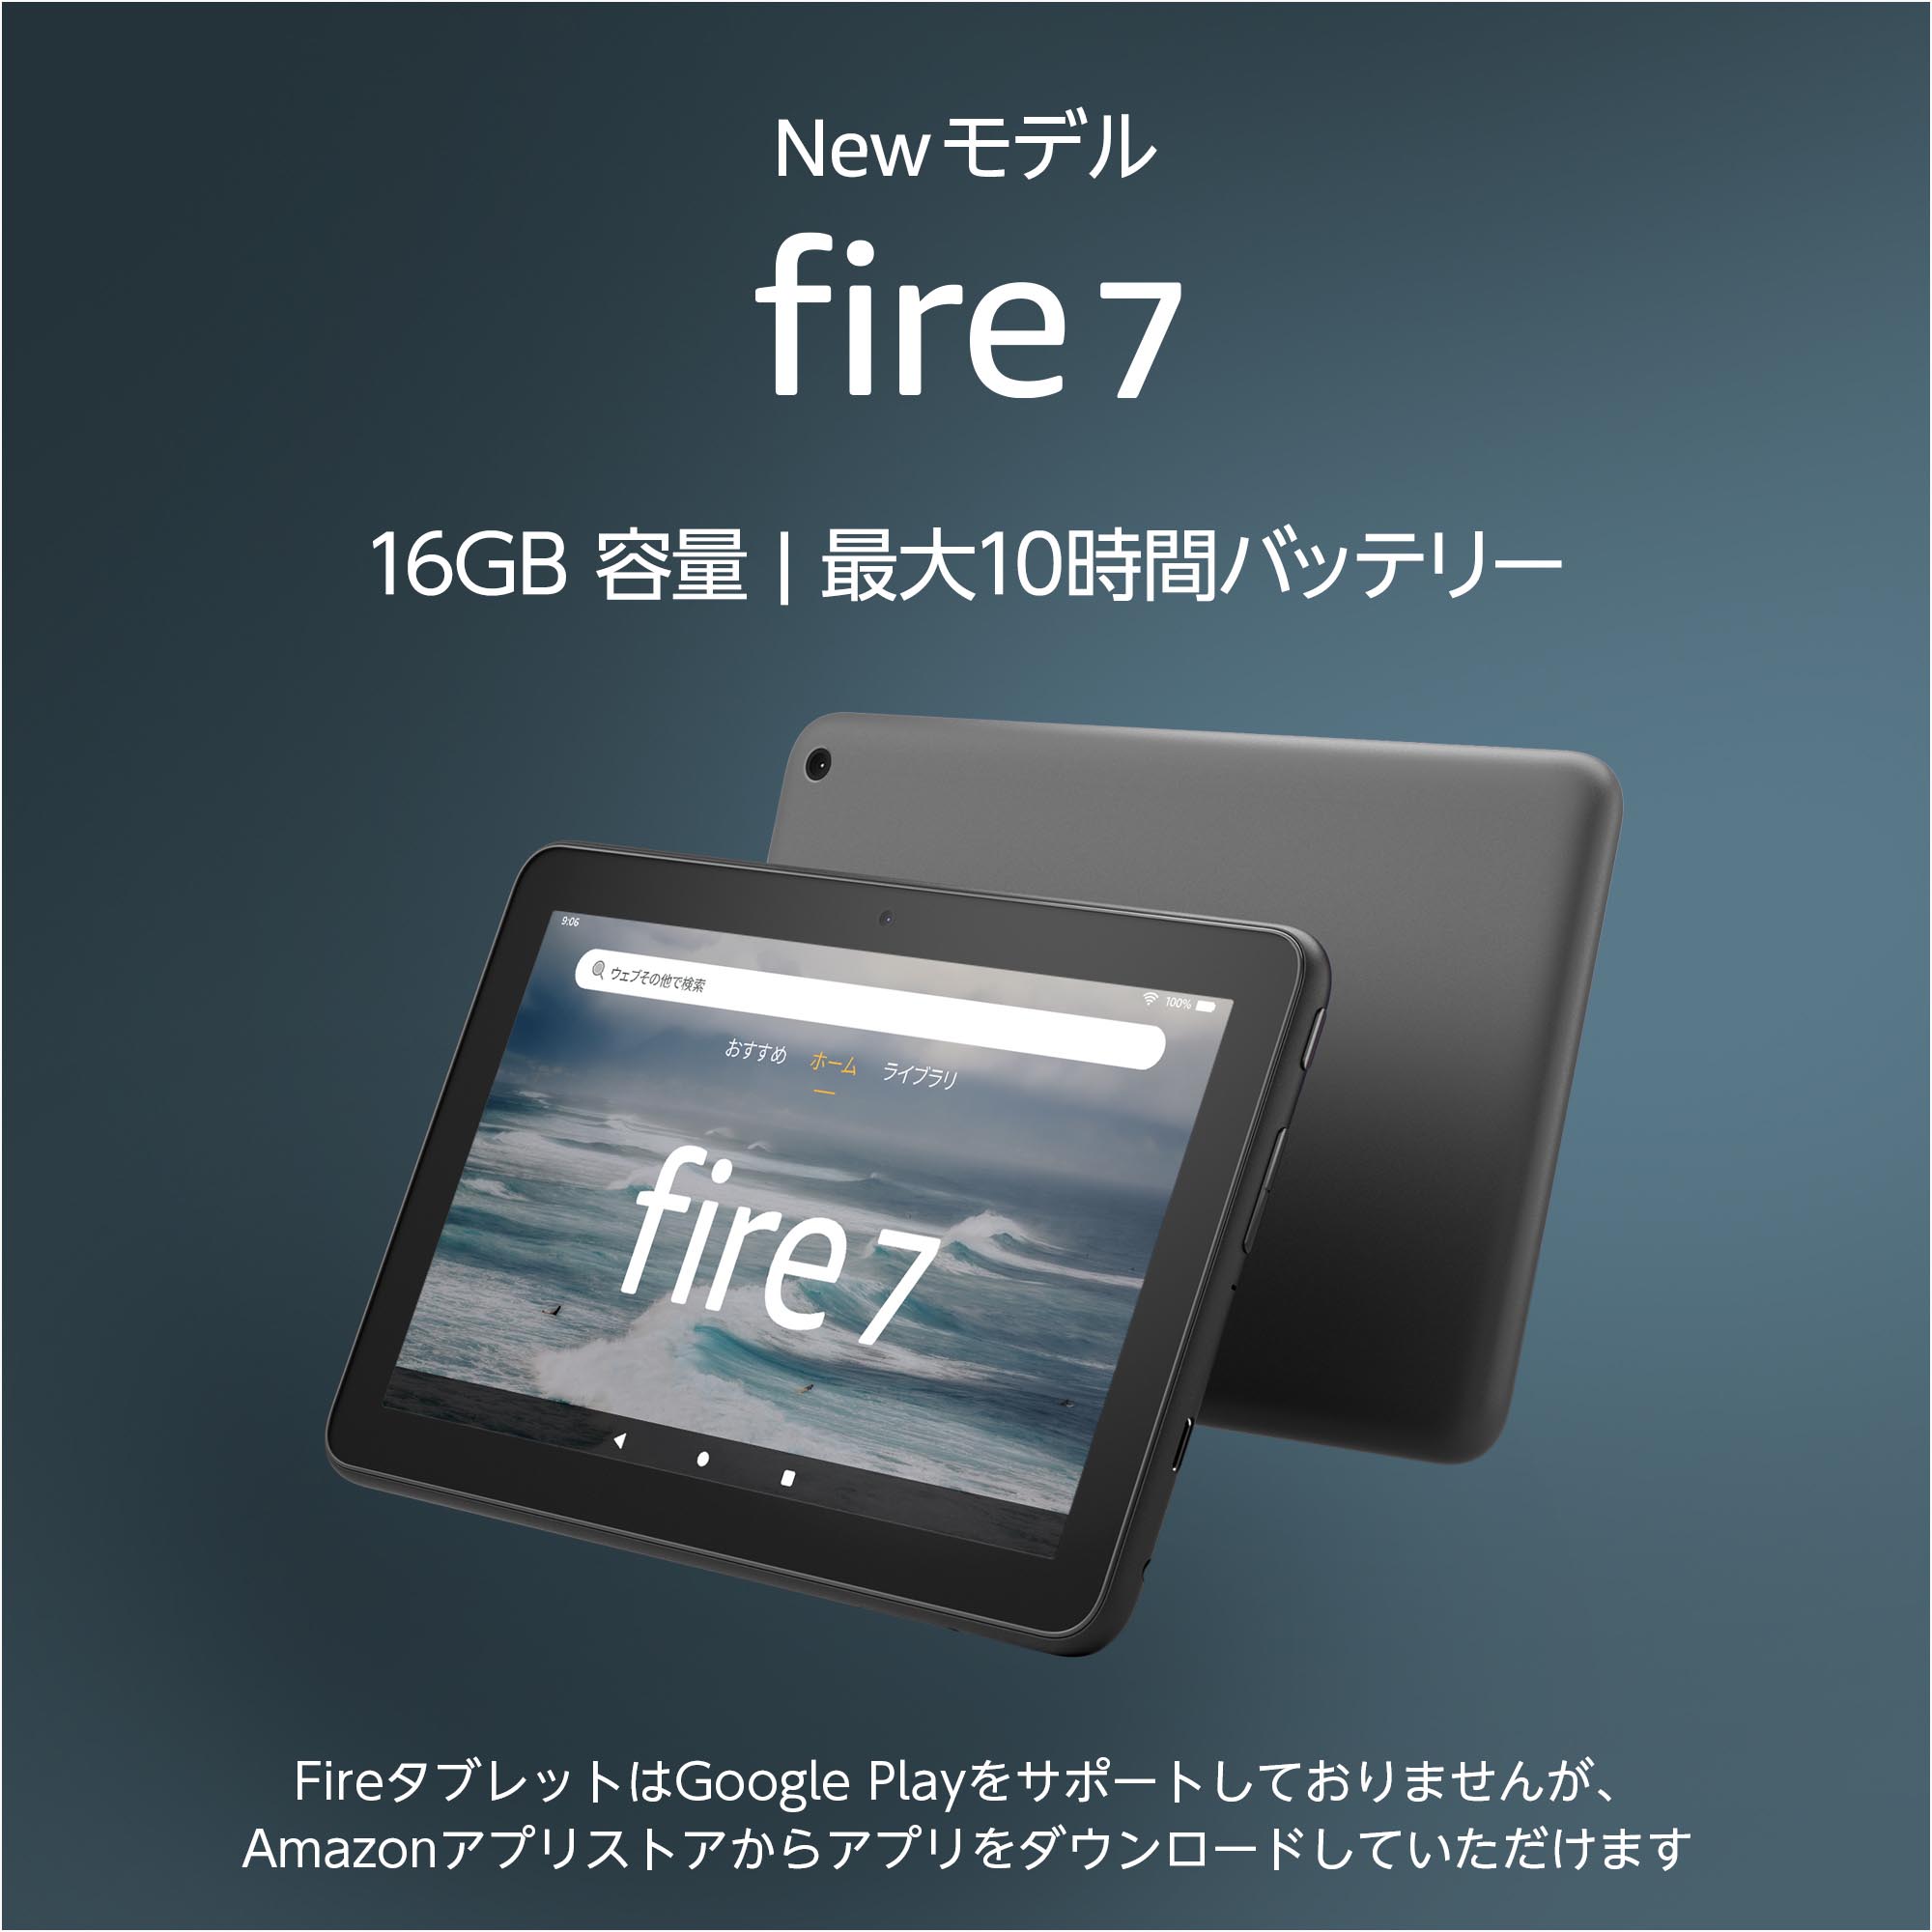 Amazon、7型タブレット「Fire 7」新モデル パフォーマンスとバッテリー 